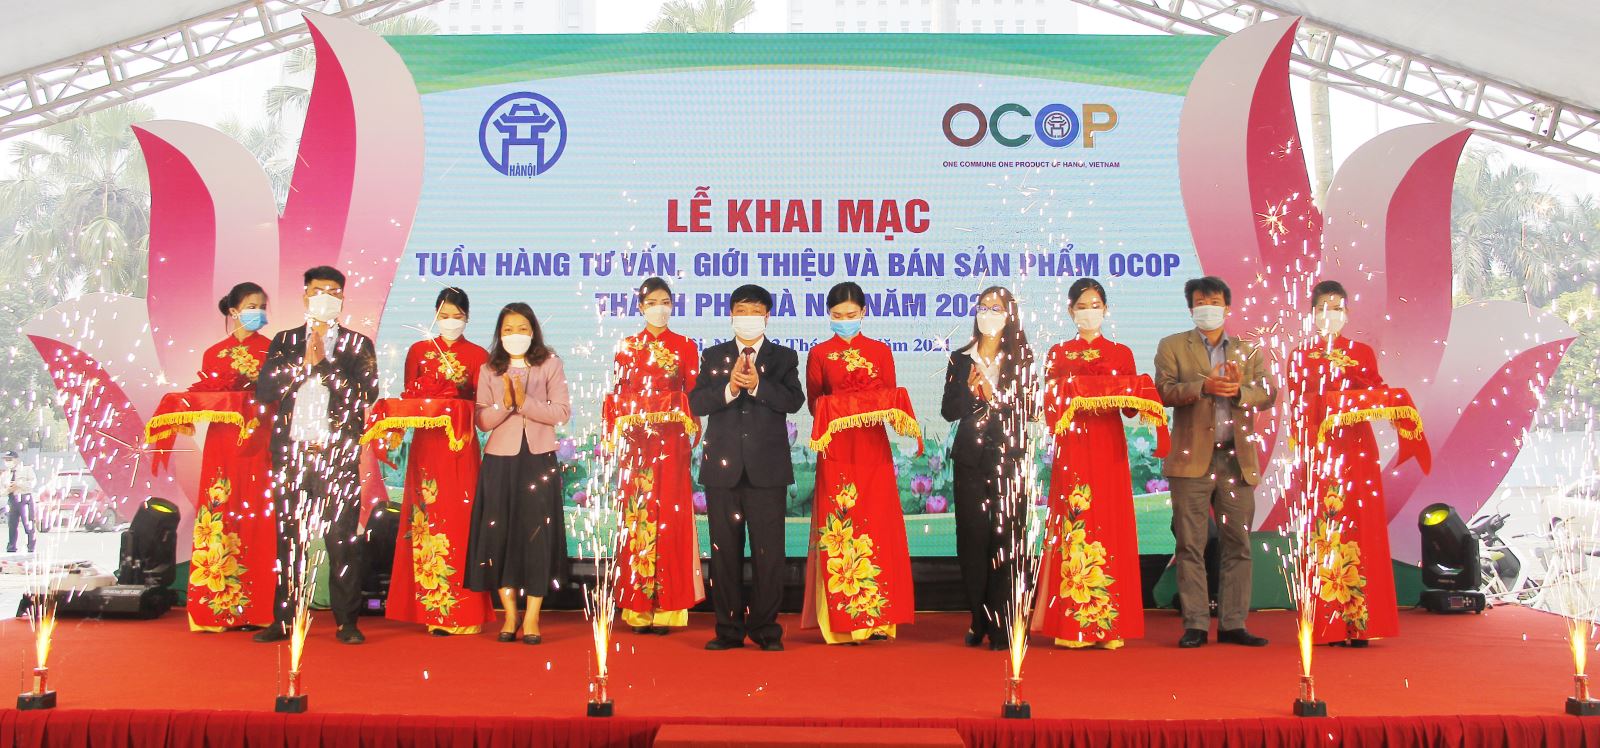 Các đại biểu cắt băng khánh thành điểm giới thiệu và bán sản phẩm OCOP Thành phố Hà Nội năm 2020